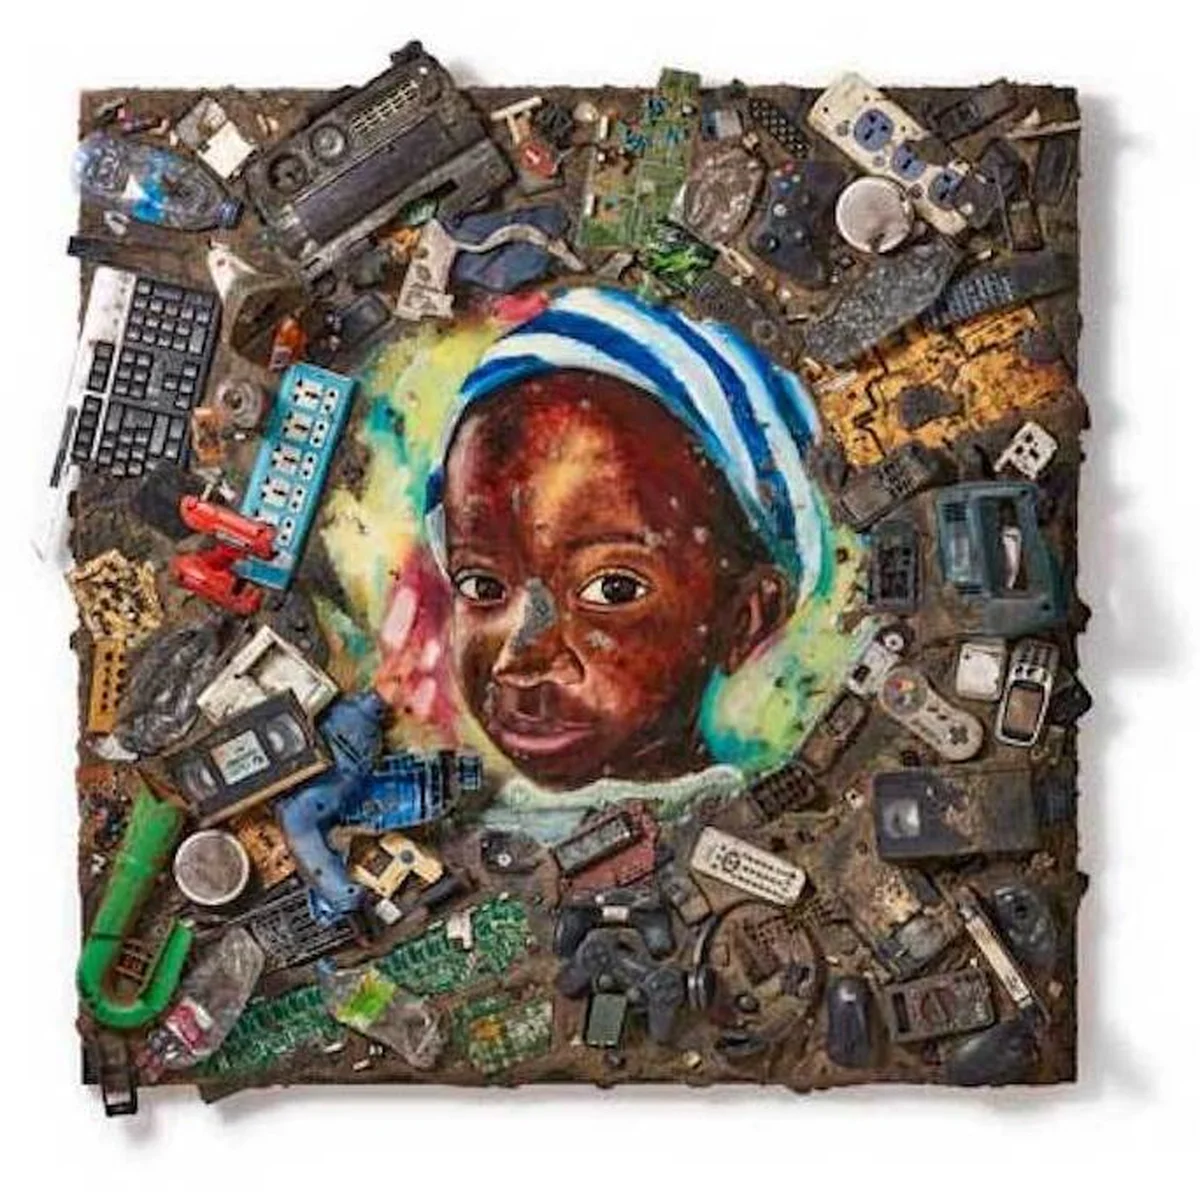 ガーナのスラム街を廃棄物アートで変える。長坂真護による初の美術館での個展が上野の森美術館にて開催中